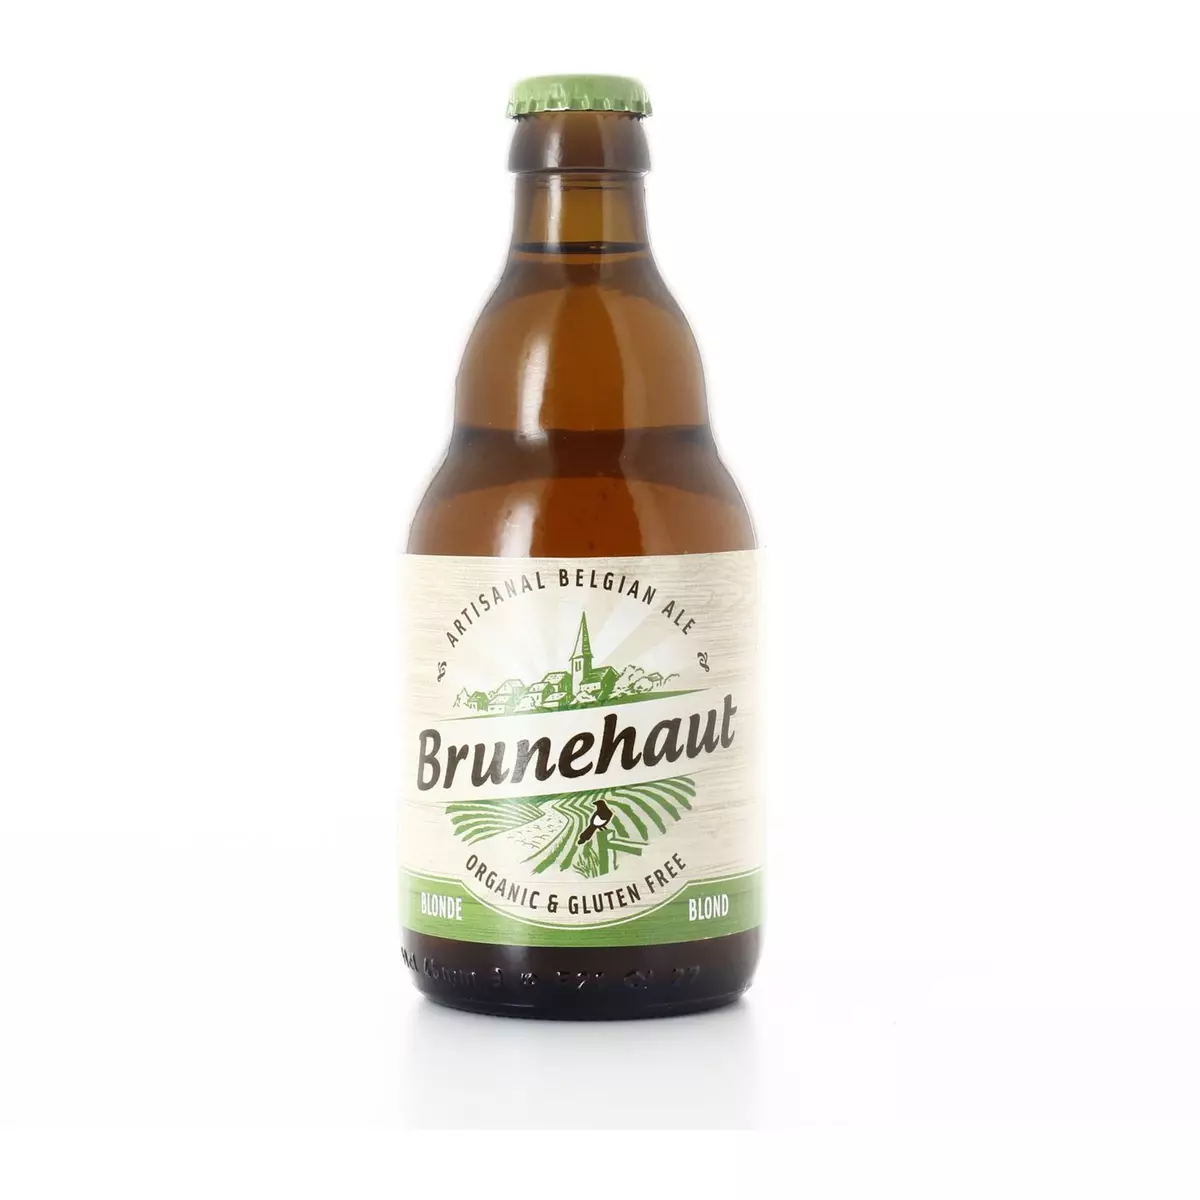 BRUNEHAUT Bière artisanale bio blonde sans gluten 6,5% bouteille 33cl